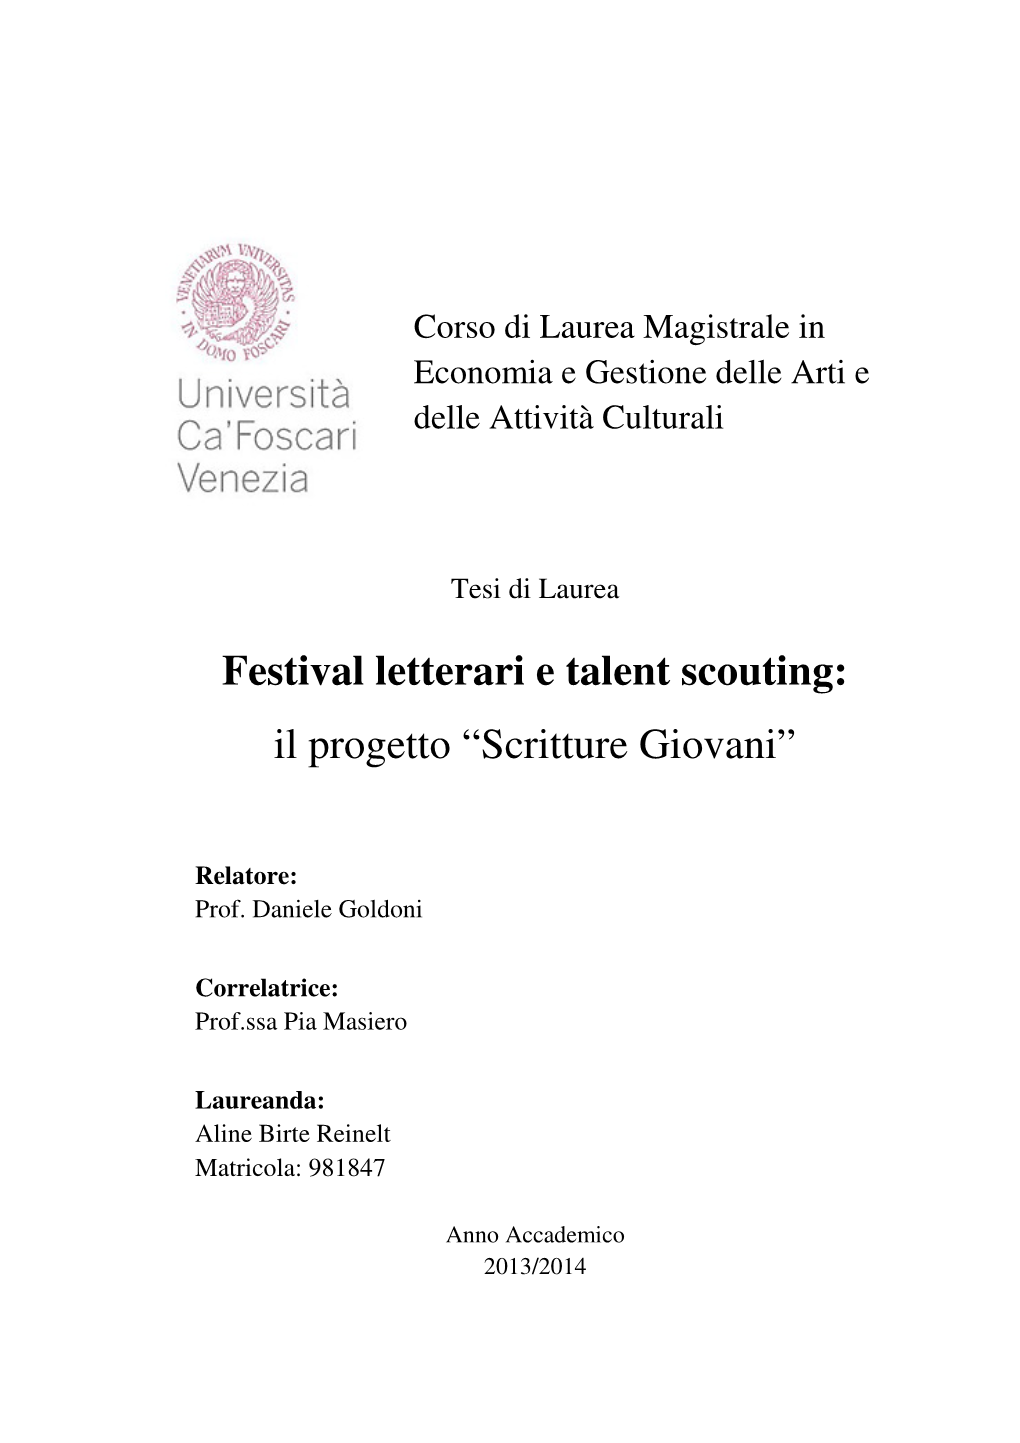 Festival Letterari E Talent Scouting: Il Progetto “Scritture Giovani”